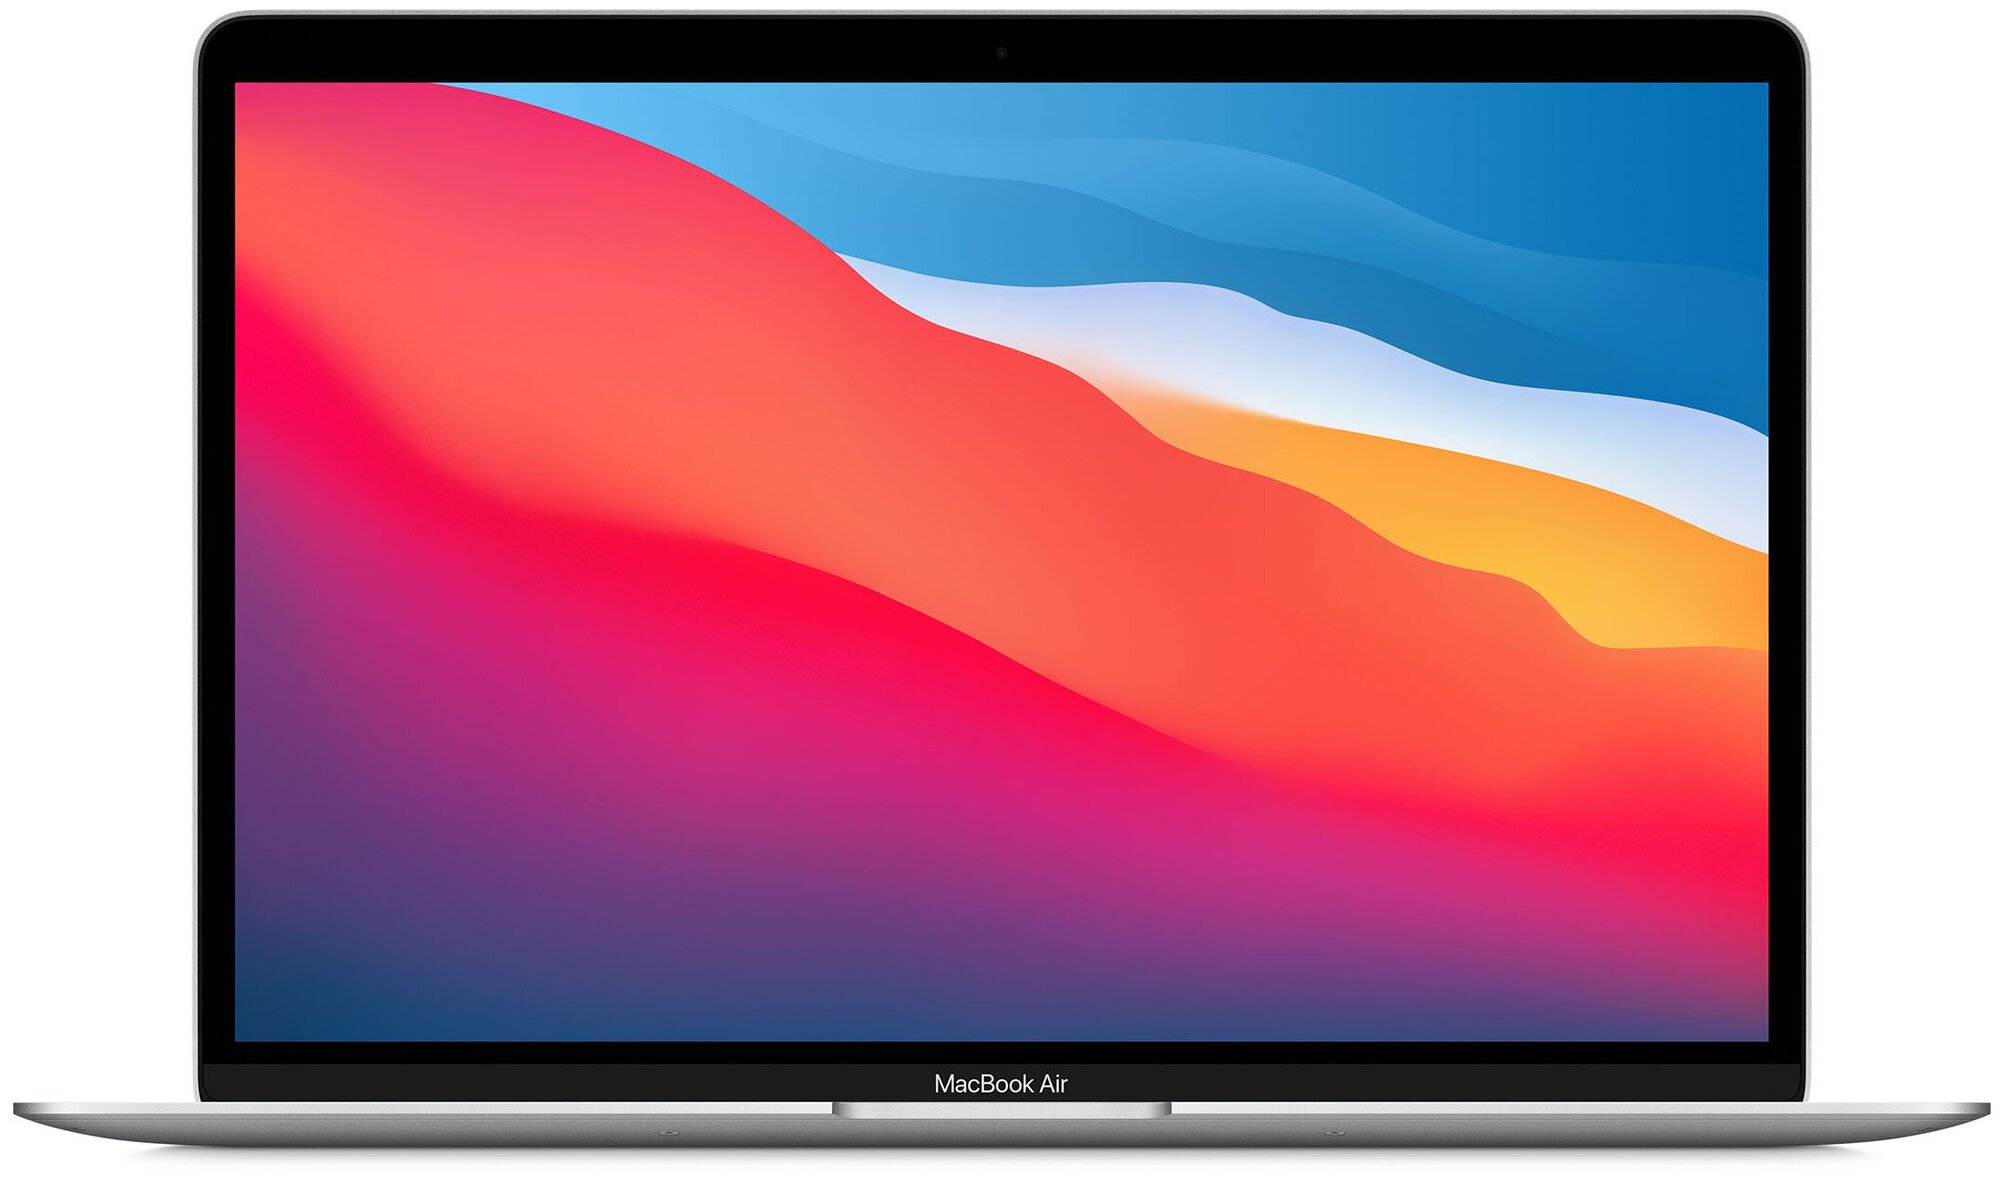 13.3" Ноутбук Apple MacBook Air 13 Late 2020 2560x1600, Apple M1 3.2 ГГц, RAM 8 ГБ, DDR4, SSD 256 ГБ, Apple graphics 7-core, macOS, MGN93SA/A, серебристый